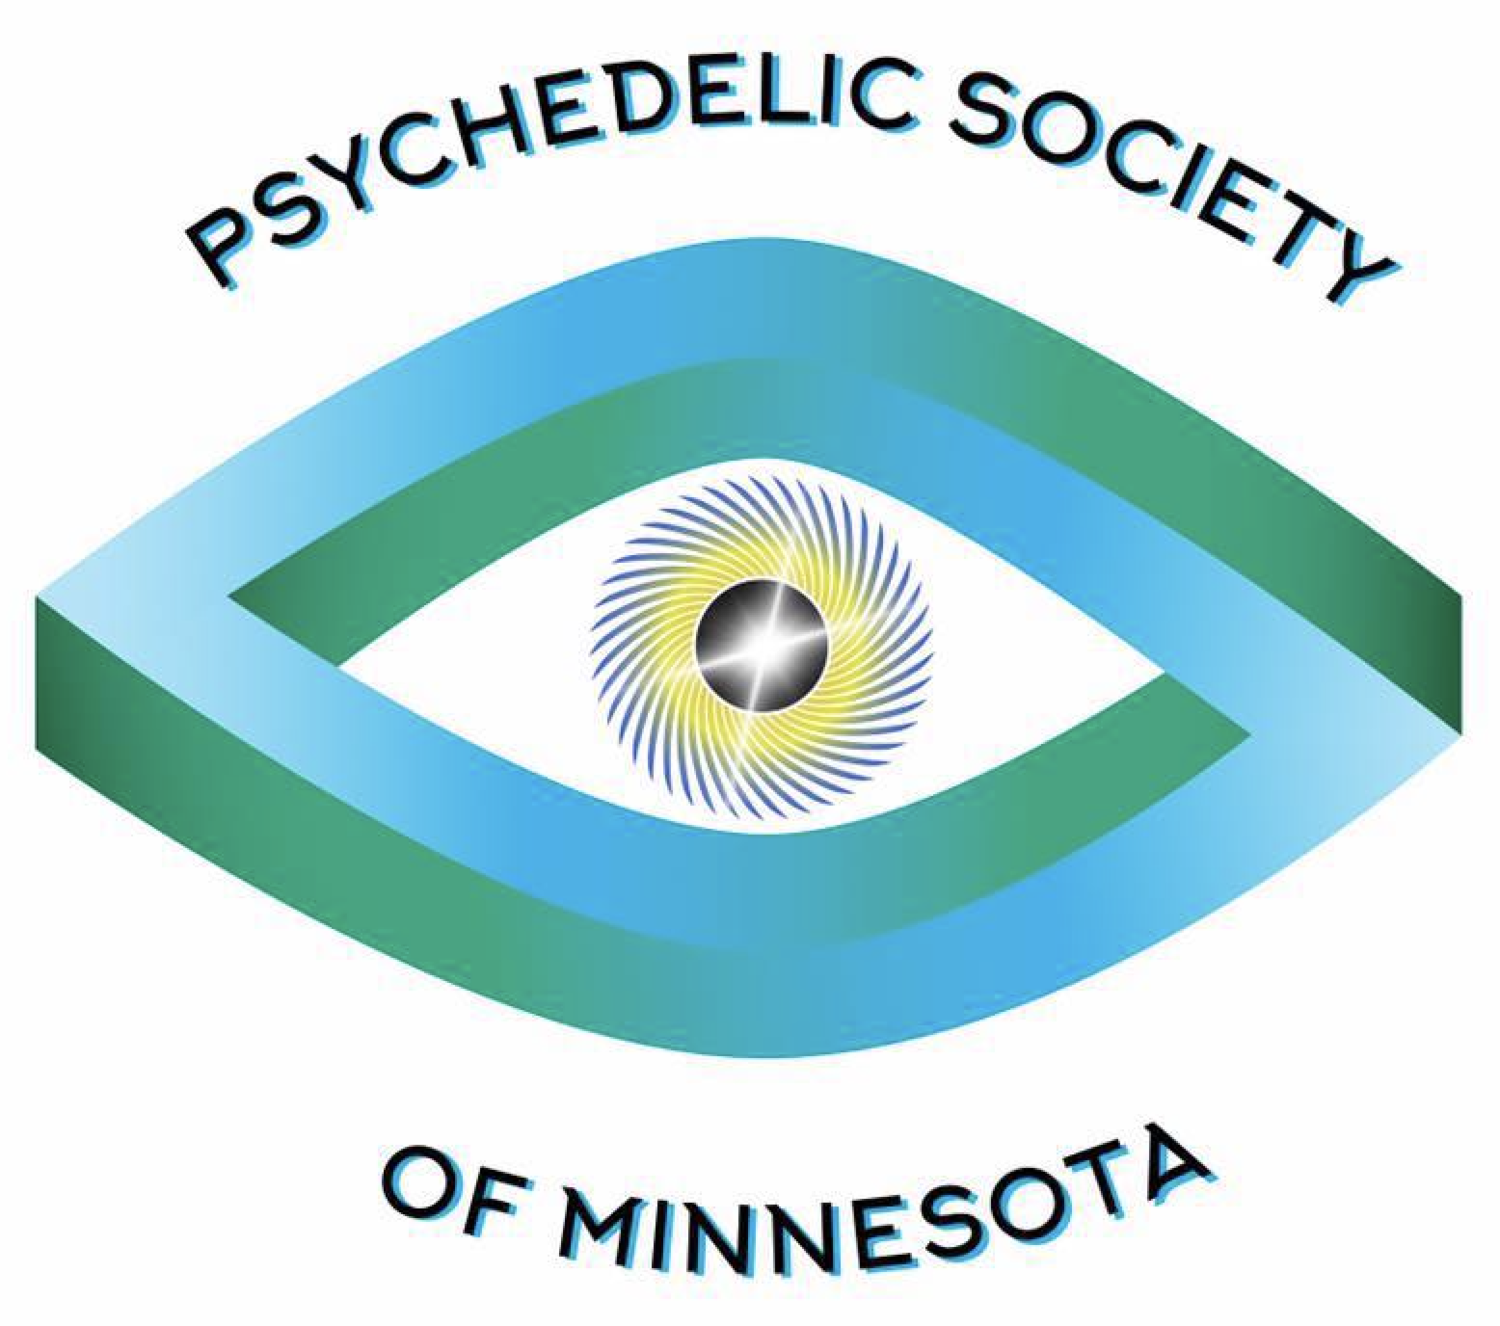 Psychedelic Society of Minnesota